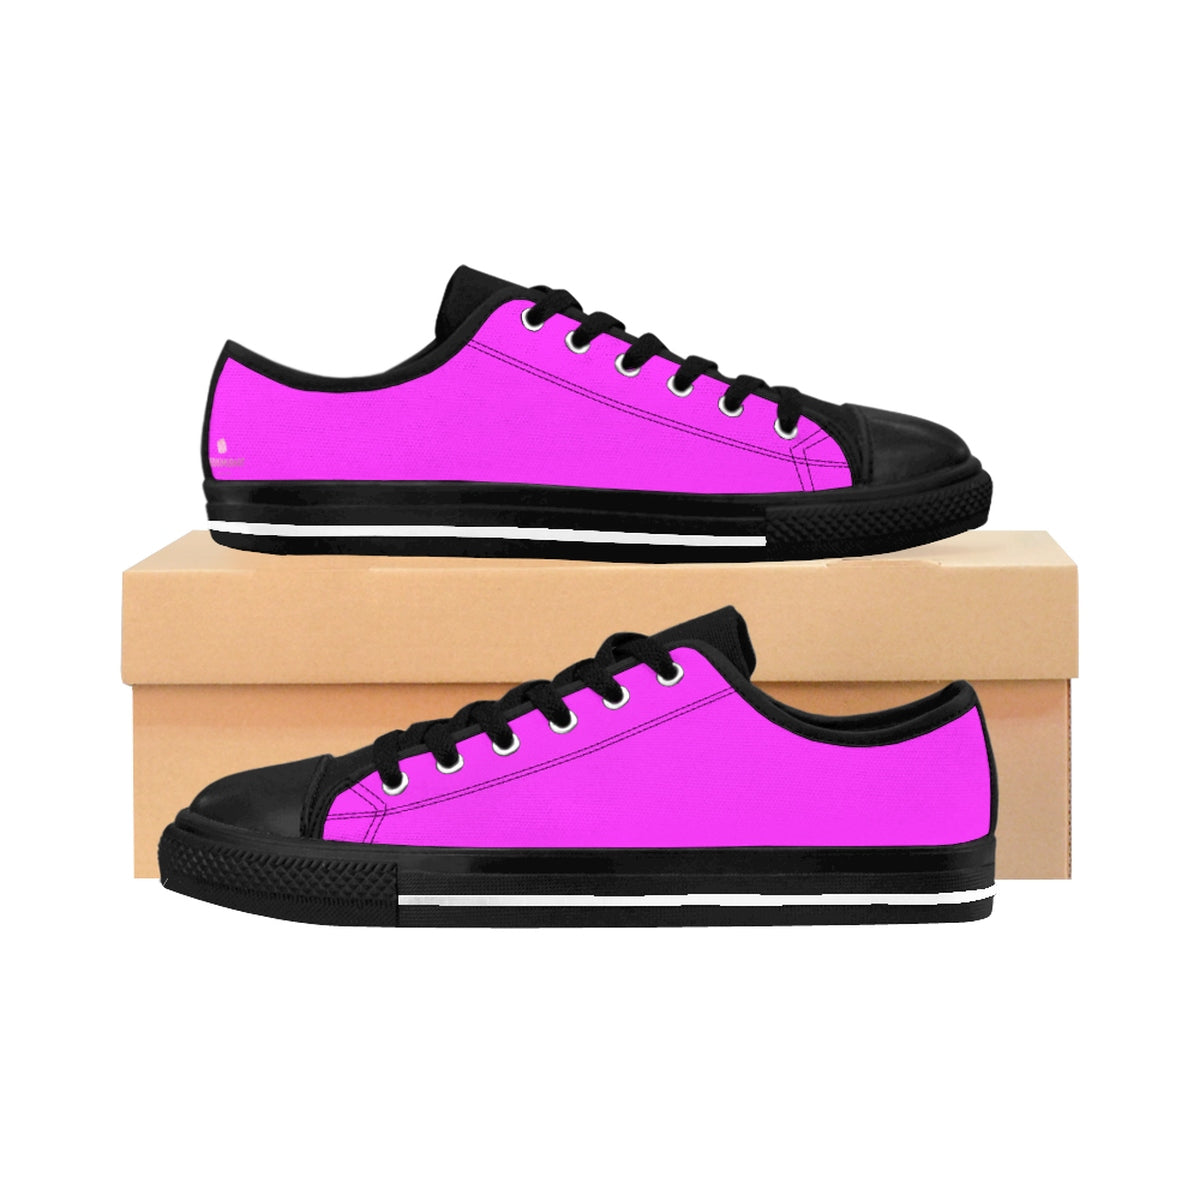 Bubble Gum Pink Solid Color Designer Low Top Women's Sneakers (US Size: 6-12)-Women's Low Top Sneakers-US 10-Heidi Kimura Art LLC